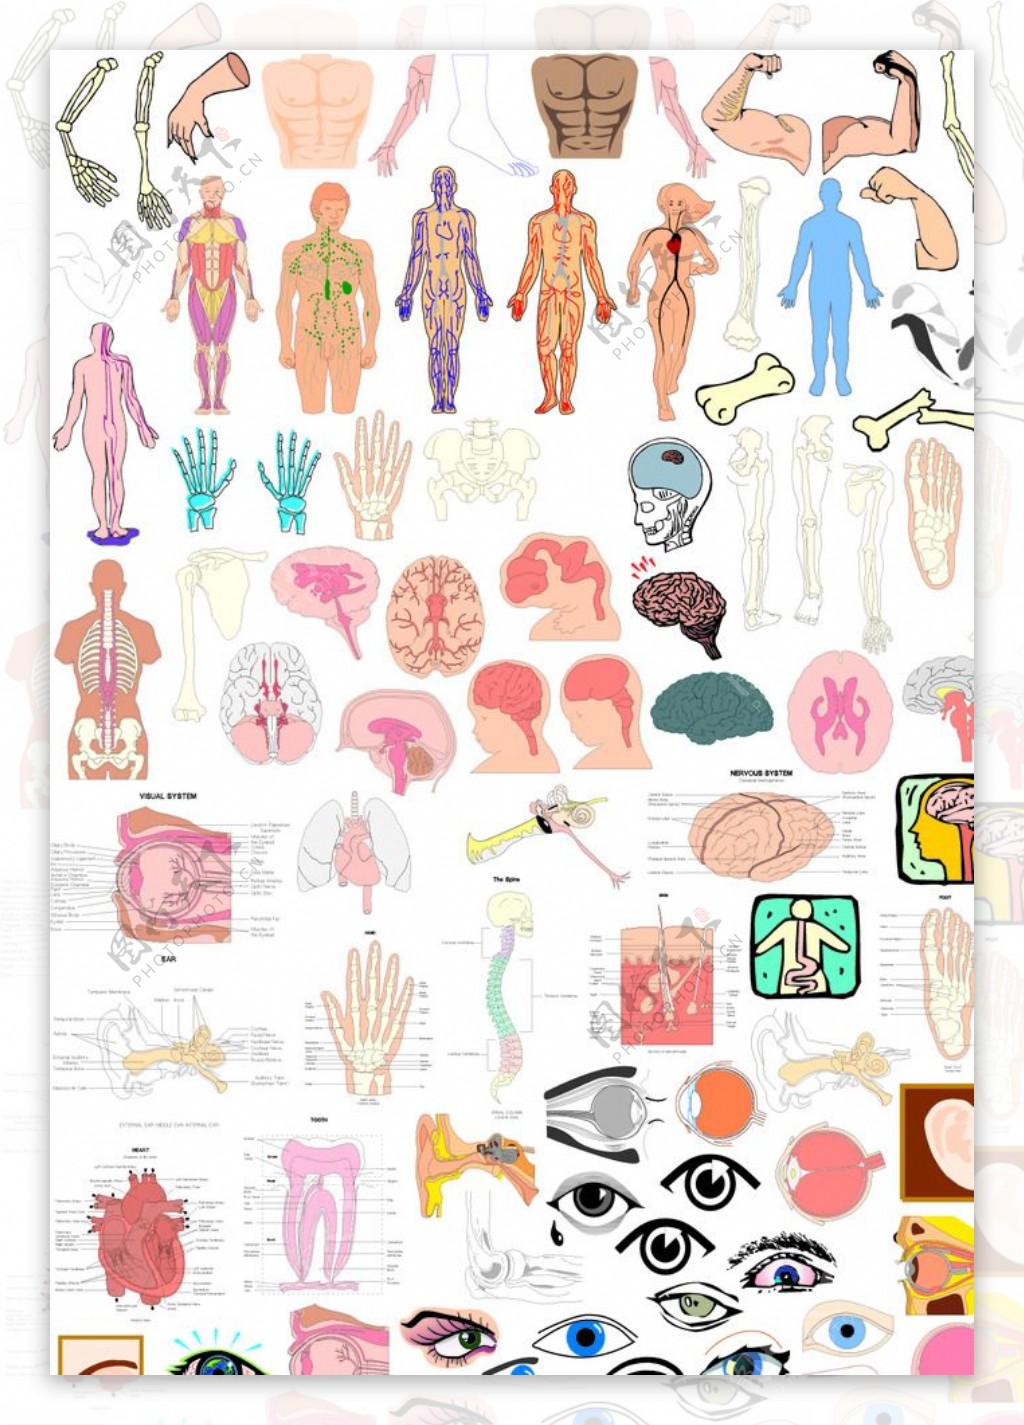 人体结构各部位解剖图